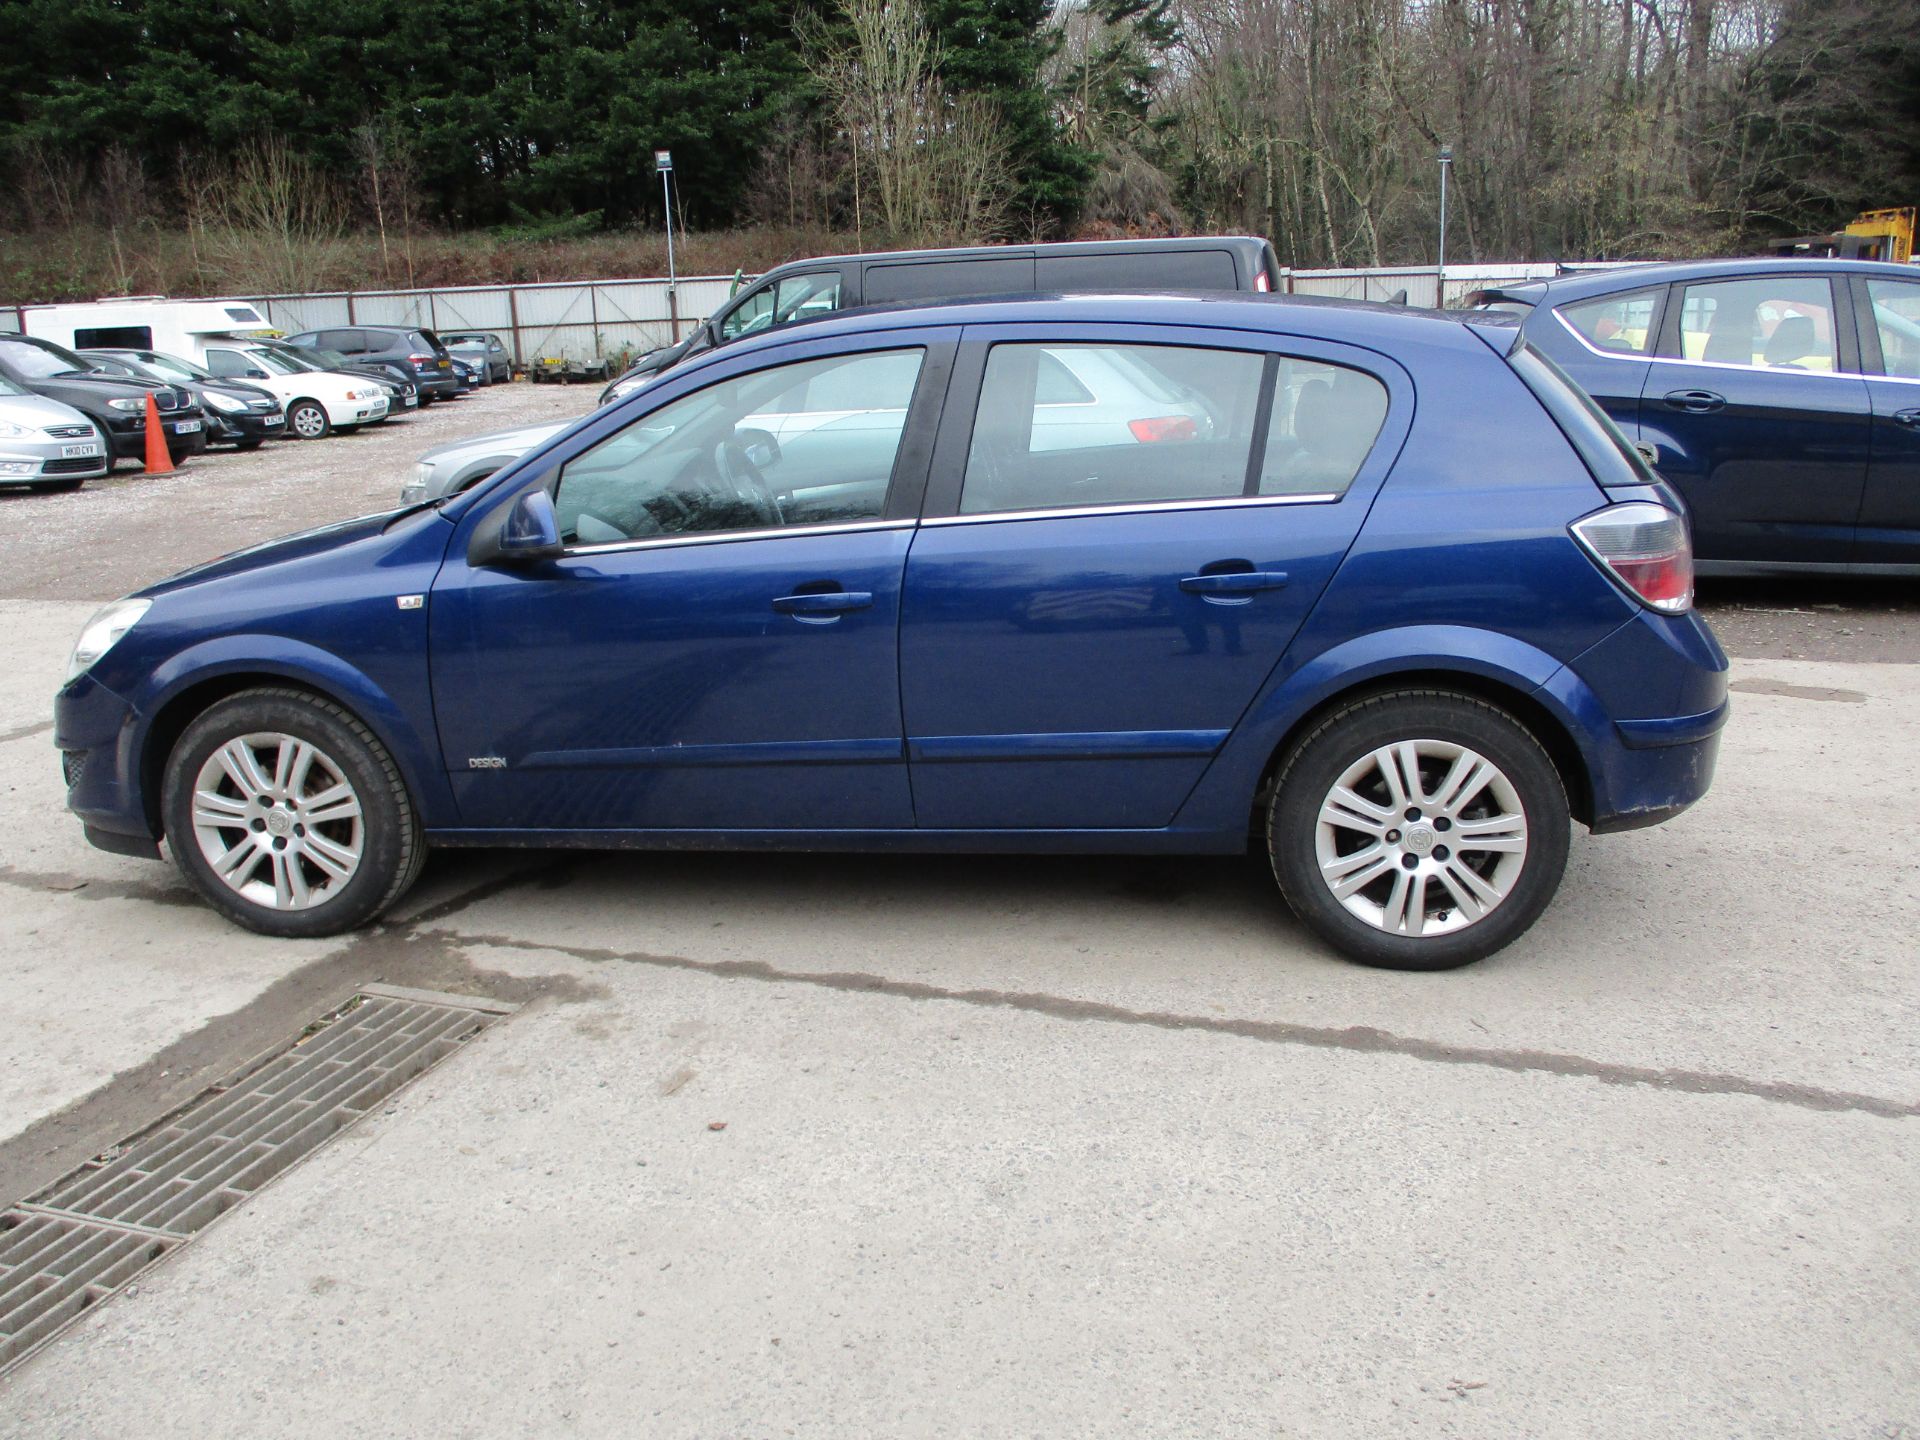 2009 VAUXHALL ASTRA DESIGN - 1598cc 5dr Hatchback (Blue, 103k) - Image 8 of 15